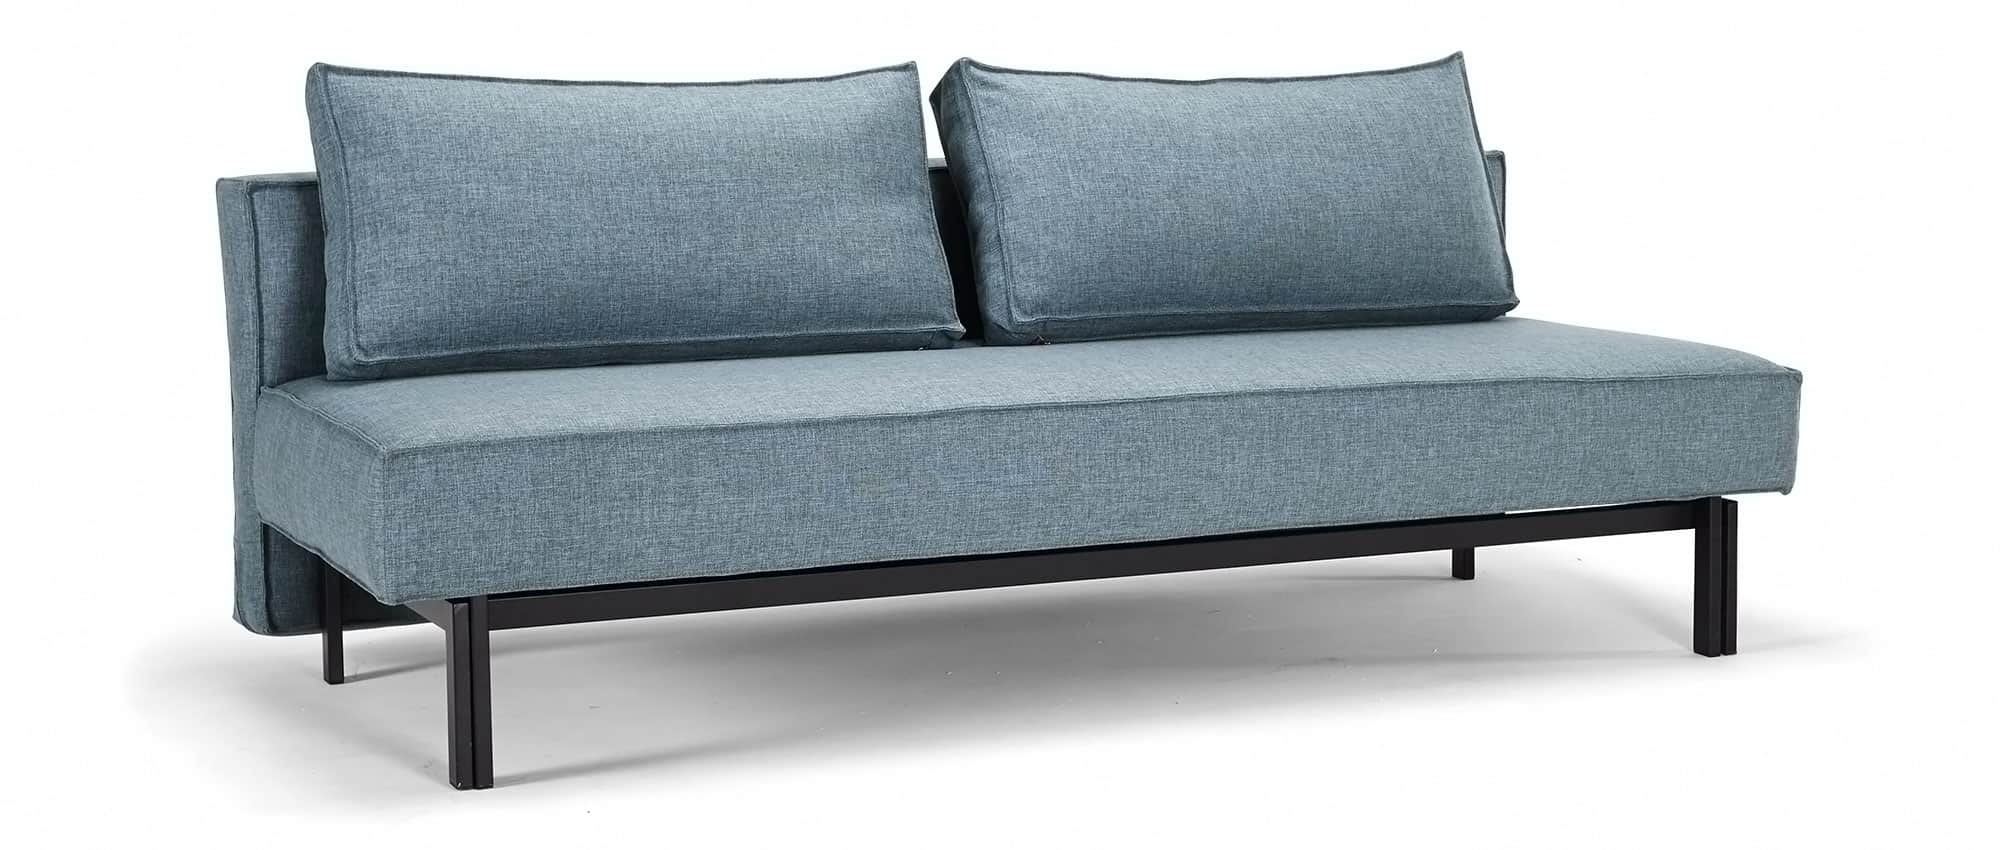 SLY blaues Schlafsofa Gästebett von Innovation, schwarze Metallfüße, Klappsofa ohne Armlehnen - Liegefläche 140x200 cm